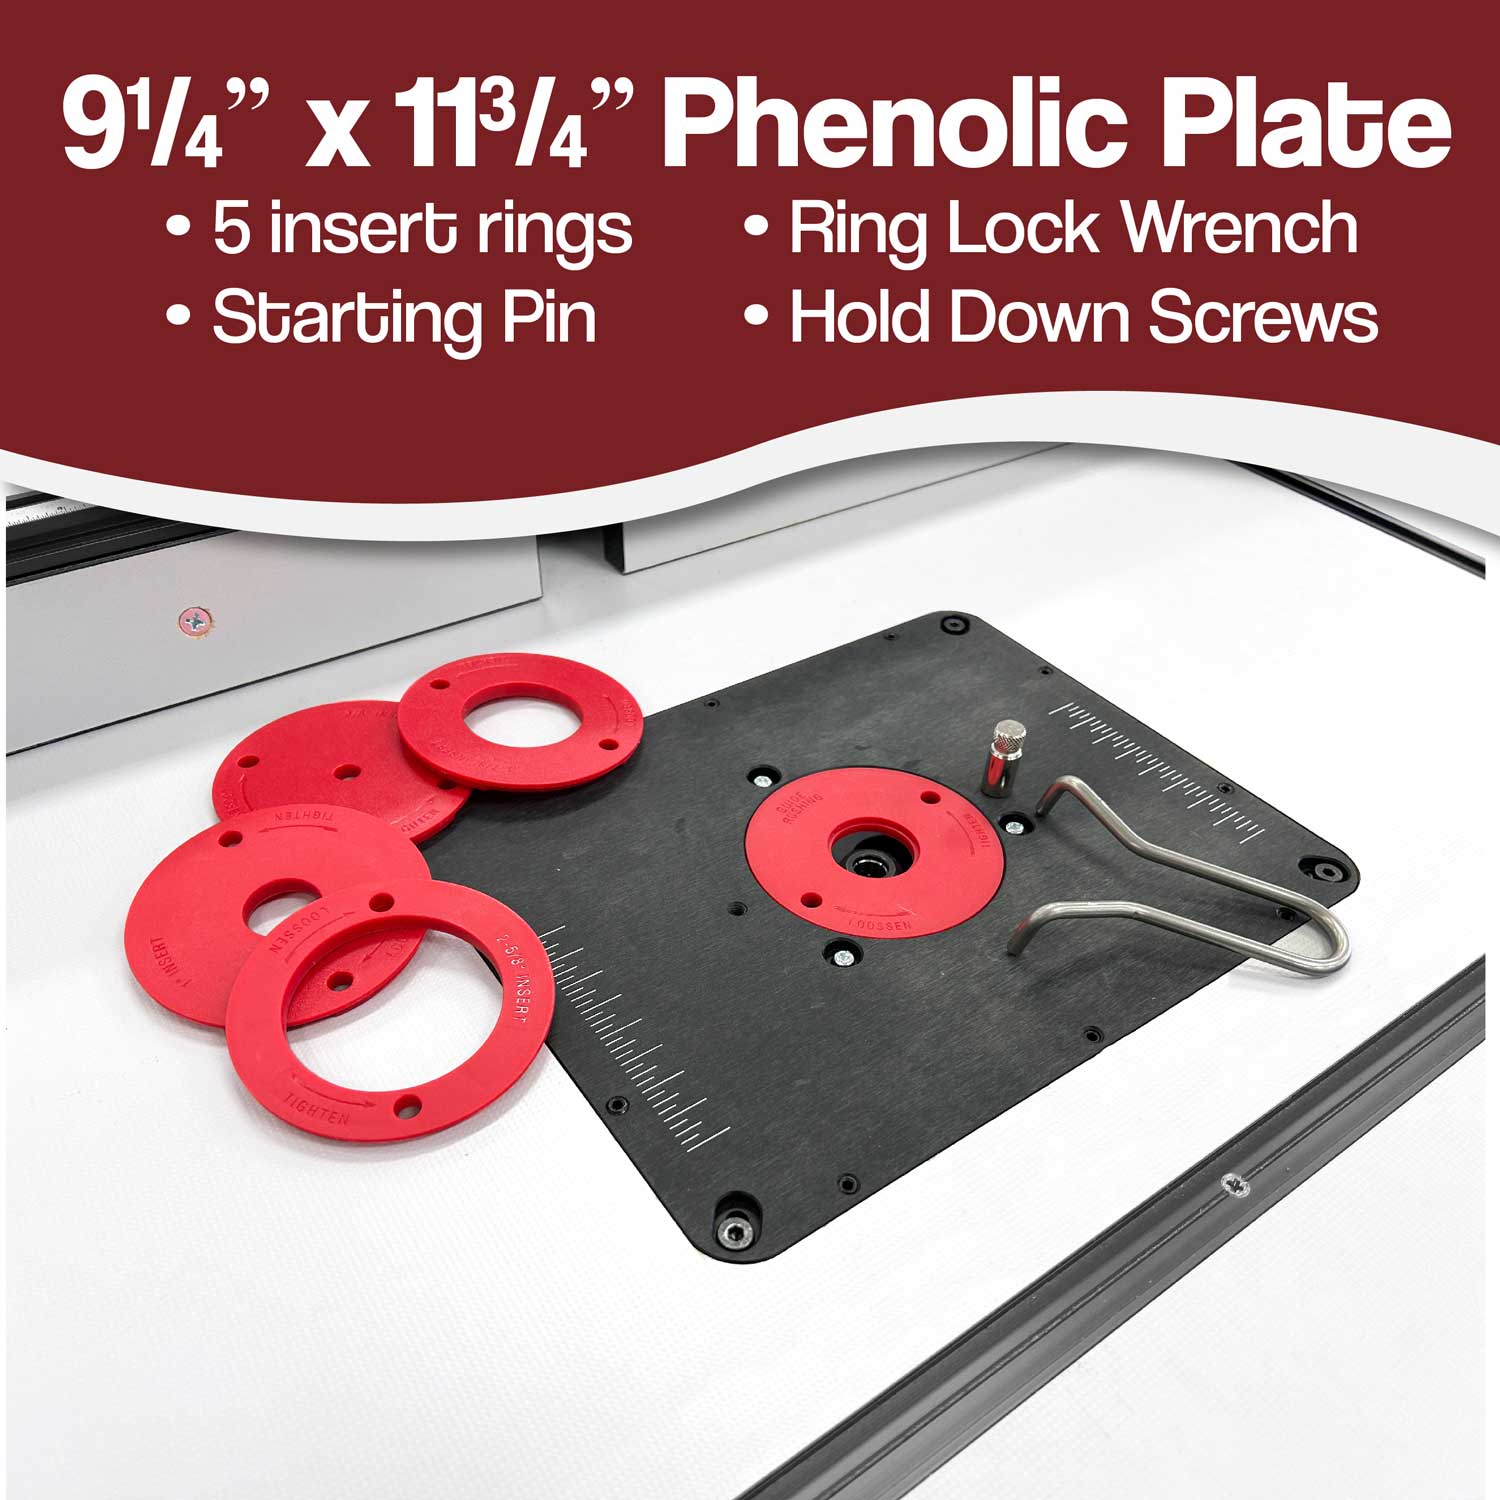 Premium 9 ¼” x 11 ¾” Phenolic Router Plate Features